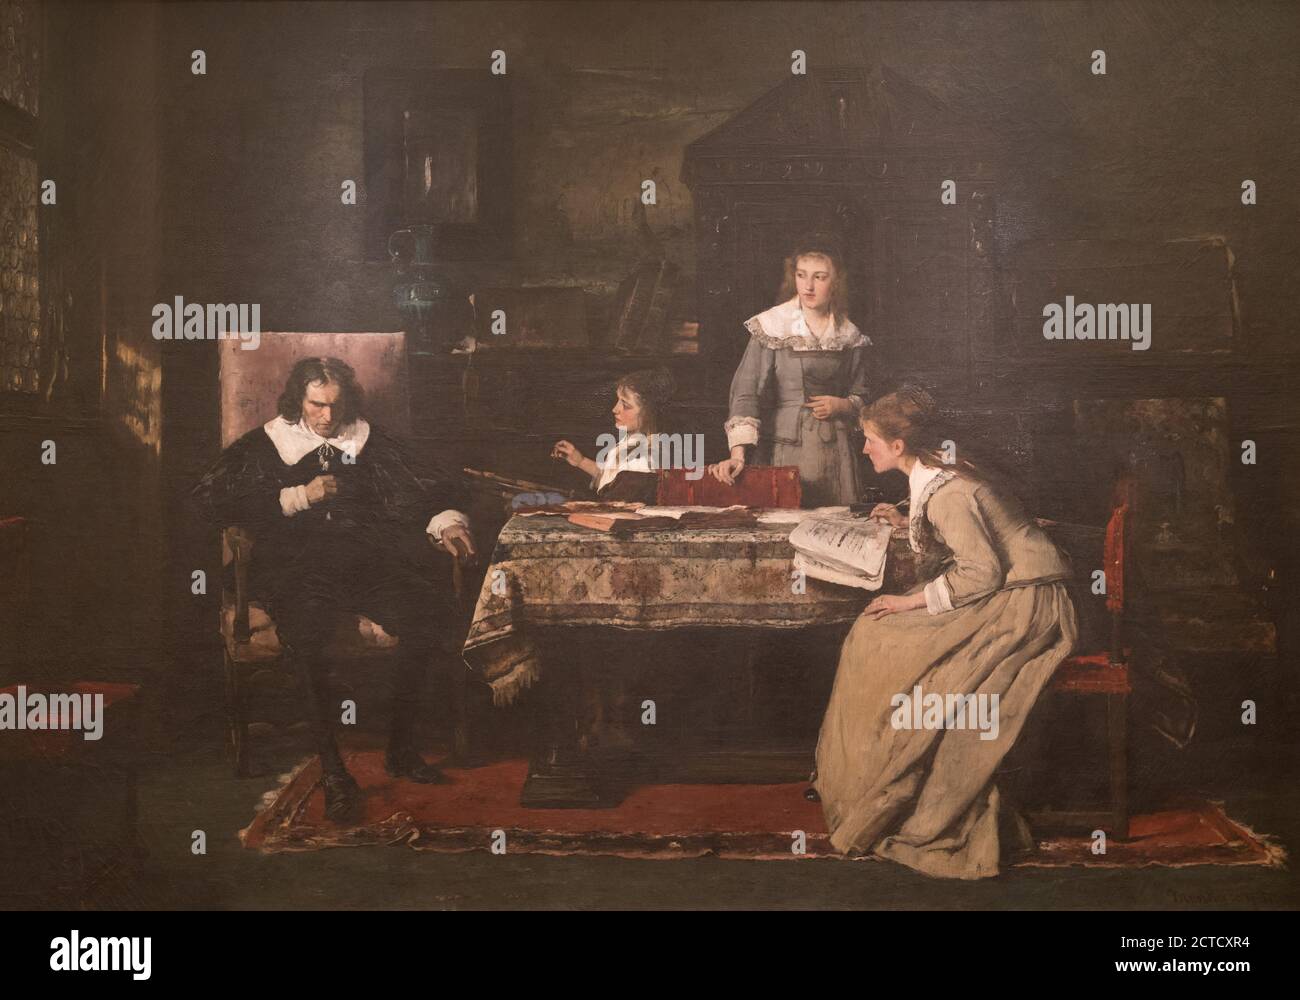 Aveugle Milton dictant 'Paradis perdu' à ses filles, image fixe, peintures, 1877, Munkássy, Mihály, 1844-1900 Banque D'Images